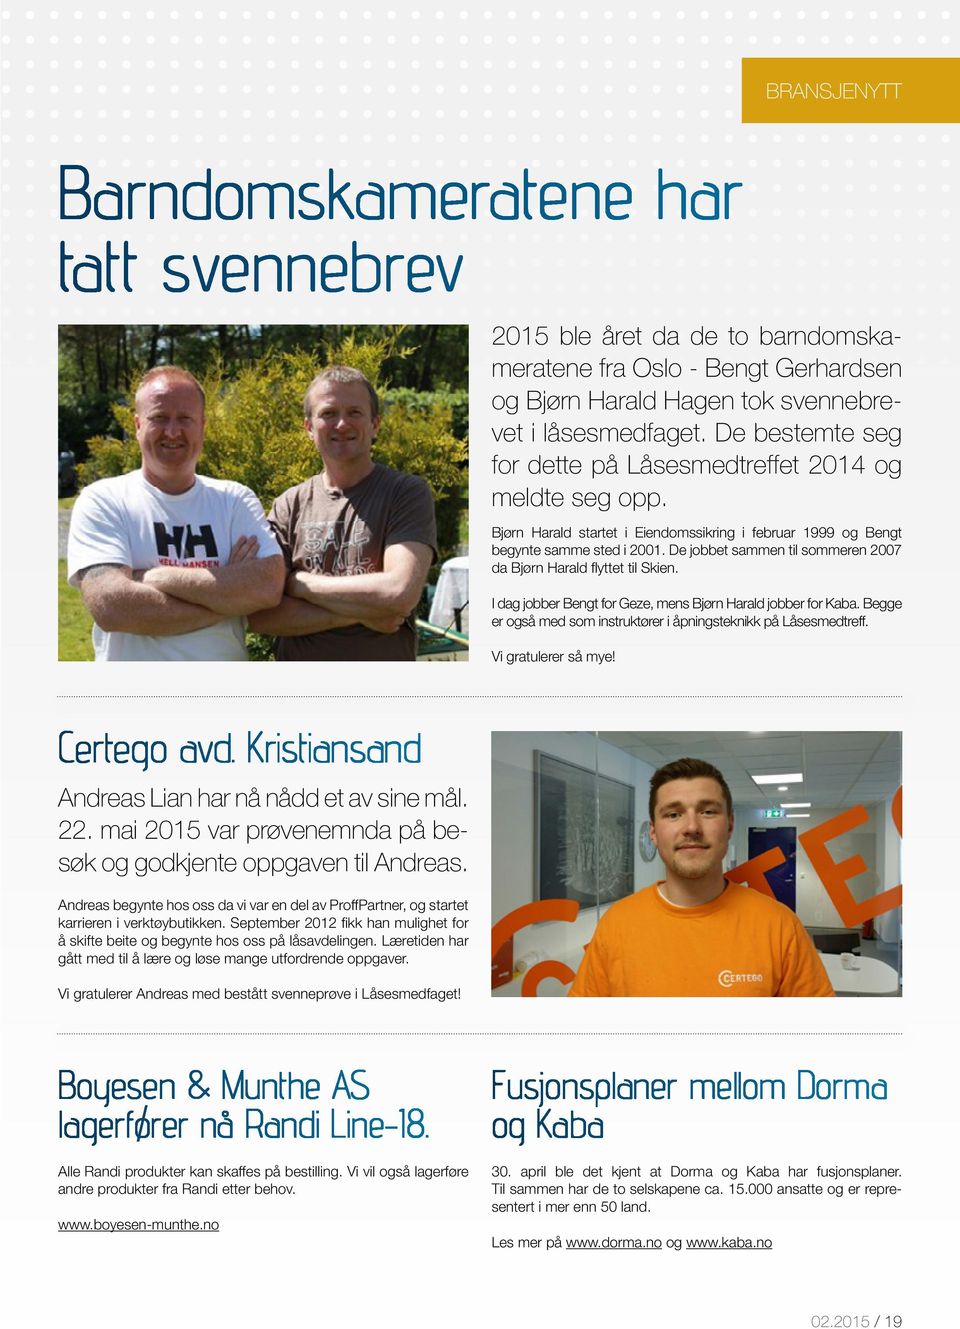 De jobbet sammen til sommeren 2007 da Bjørn Harald flyttet til Skien. I dag jobber Bengt for Geze, mens Bjørn Harald jobber for Kaba.